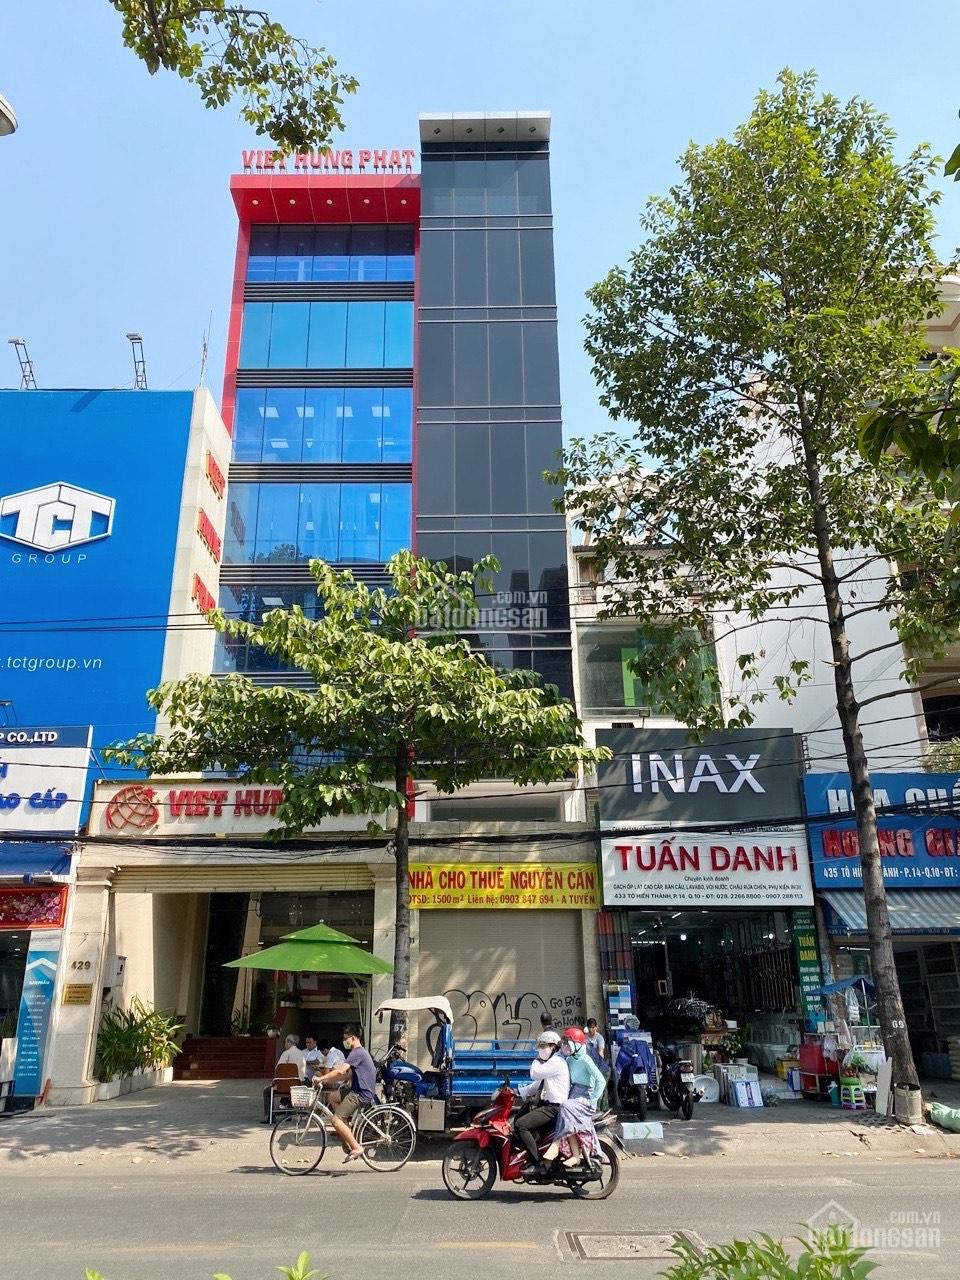 Bán nhà góc 2 mặt tiền 268 Nguyễn Tri Phương P.4 Quận 10. DT 4.1x20m 5 lầu, giá chỉ 36 tỷ.